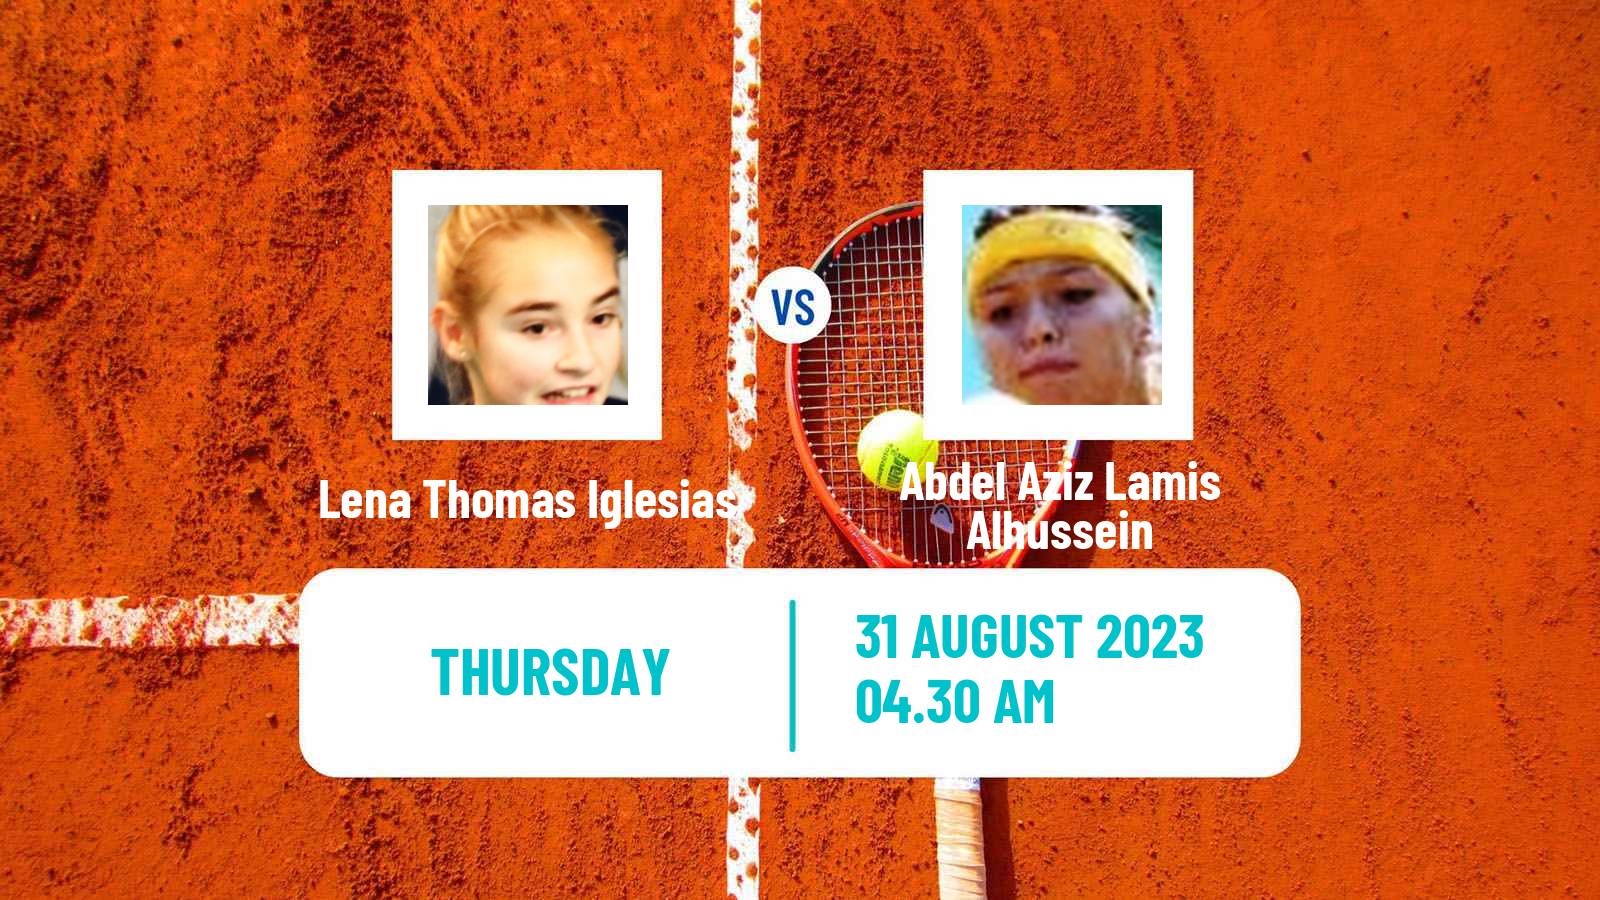 Tennis ITF W15 Monastir 30 Women Lena Thomas Iglesias - Abdel Aziz Lamis Alhussein